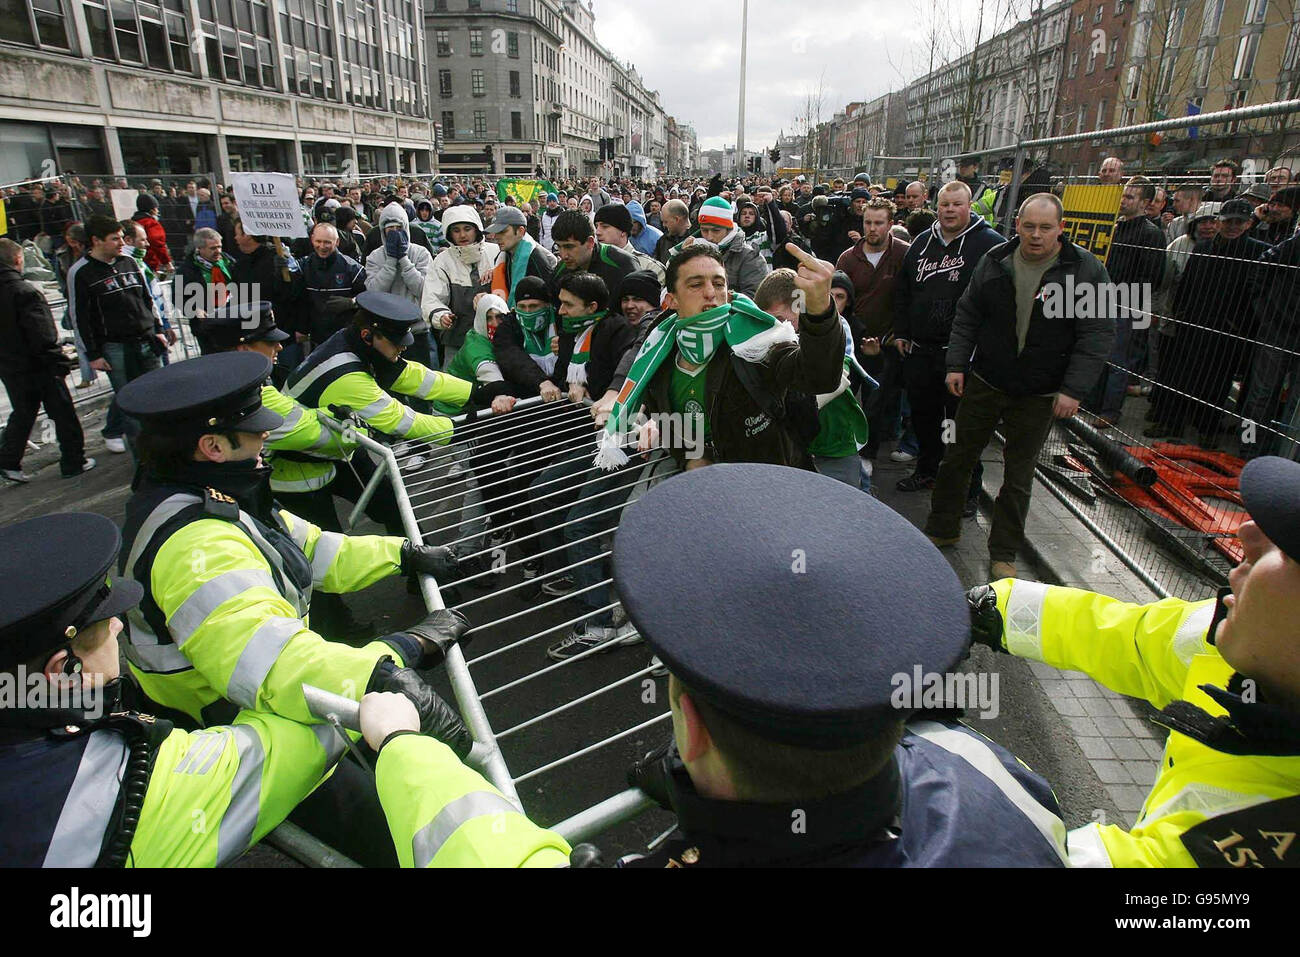 Centinaia di manifestanti repubblicani si scontrano con la polizia antisommossa nel centro di Dublino per bloccare una sfilata dell'Ordine arancione e delle vittime della violenza dell'IRA, sabato 25 febbraio 2006. Circa una dozzina di fuochi d'artificio, barricate di metallo, bottiglie e pietre sono stati gettati a Gardai come marchers lealisti si sono riuniti a 100 metri di distanza. Due Gardai hanno subito lesioni alla testa mentre i fuochi d'artificio sono esplosi. Decine di Gardai extra in attrezzatura piena rivolta sono stati chiamati in un tentativo di sedare i disordini. Vedi la storia della PA IRISH Parade. PREMERE ASSOCIAZIONE foto. Il credito fotografico dovrebbe essere: Niall Carson/PA Foto Stock